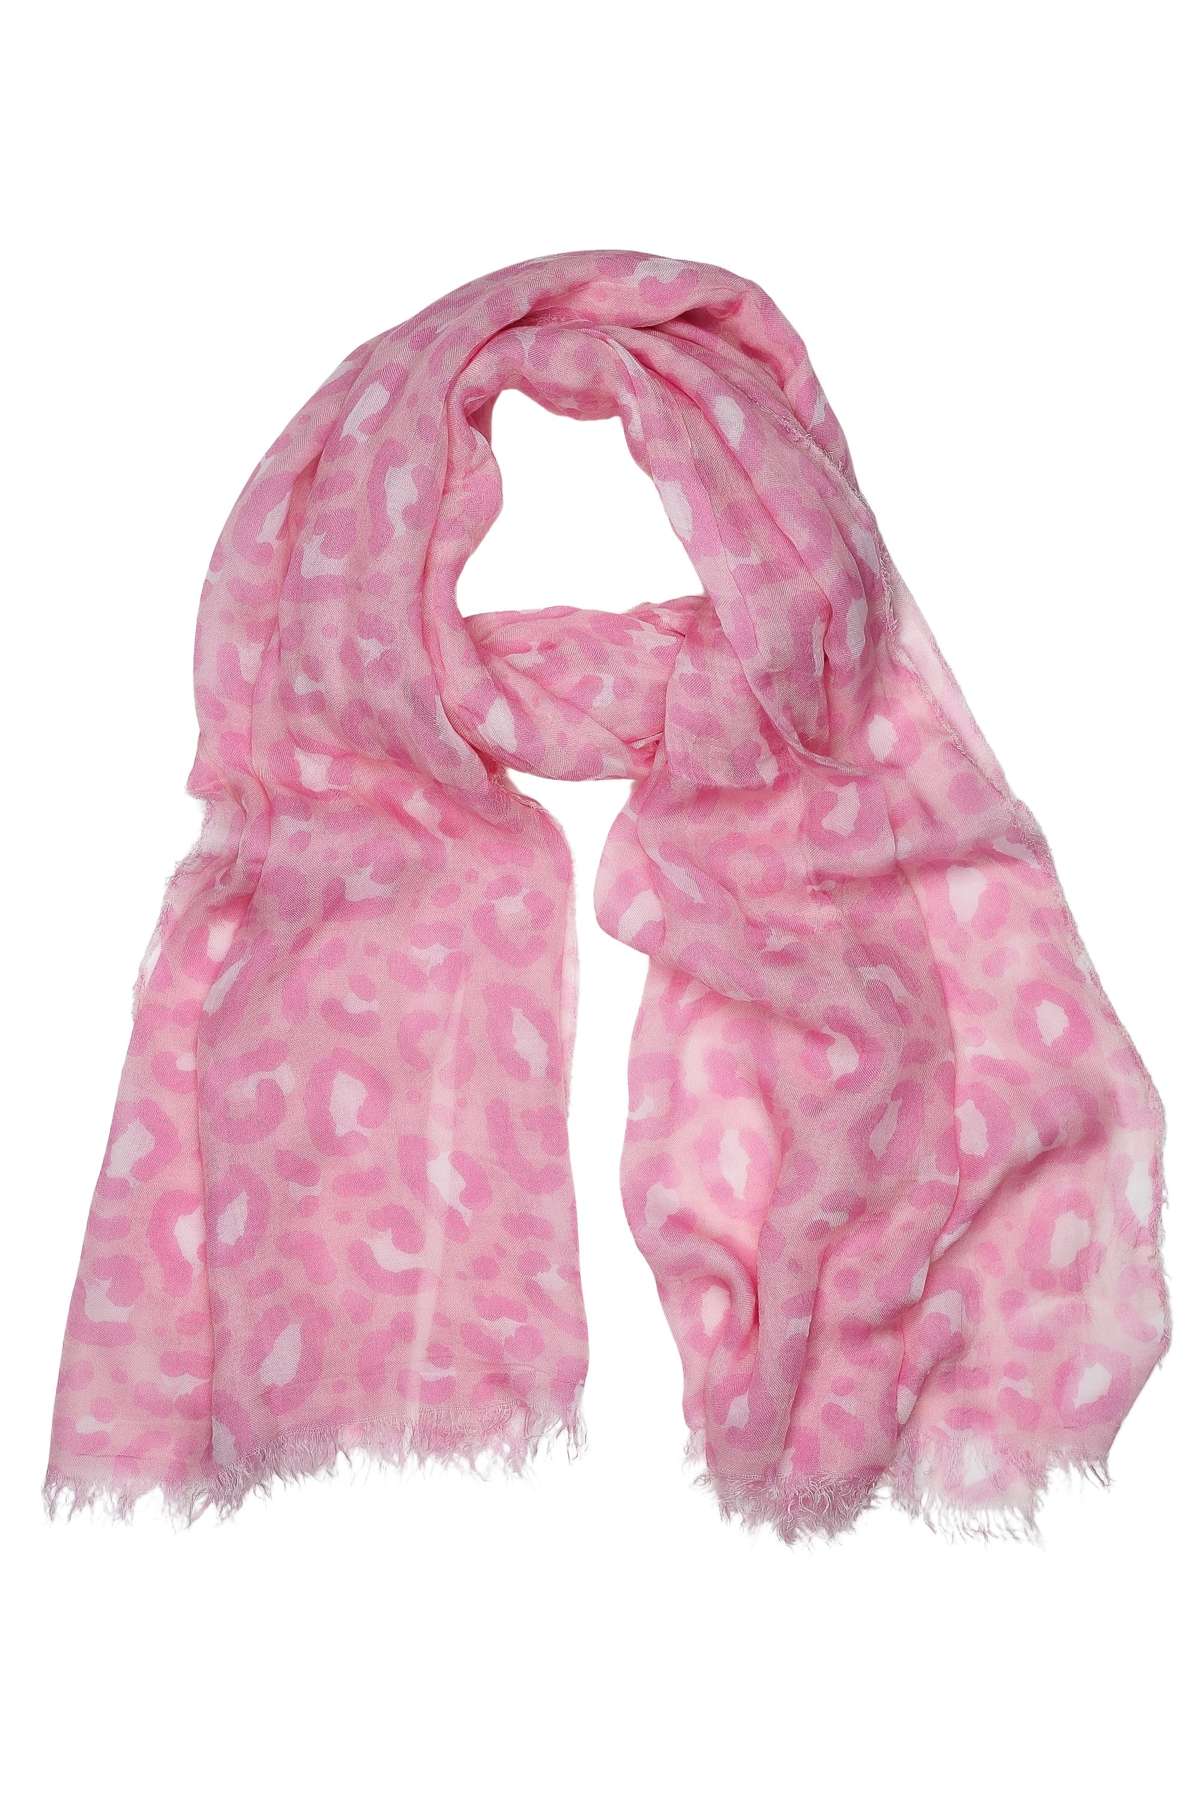 Модный шарф (1 шт.) с леопардовым принтом пастельных тонов